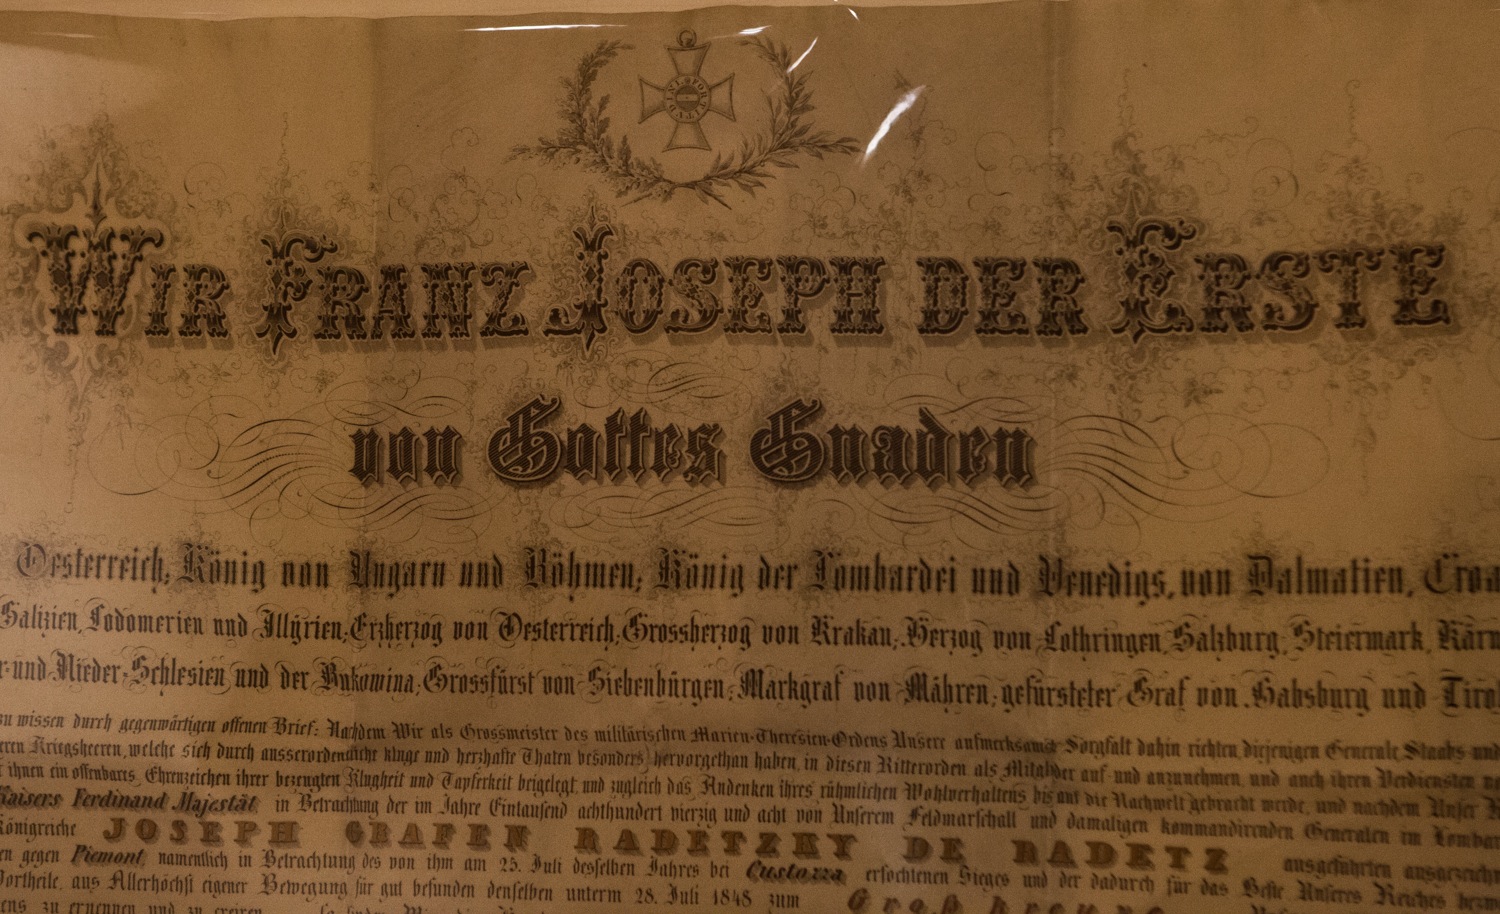 Kundmachung zur Verleihung des Großkreuzes des Militär-Maria Theresien Ordens an Josef Wenzel Graf Radetzky von Radetz (Heeresgeschichtliches Museum, Wien)